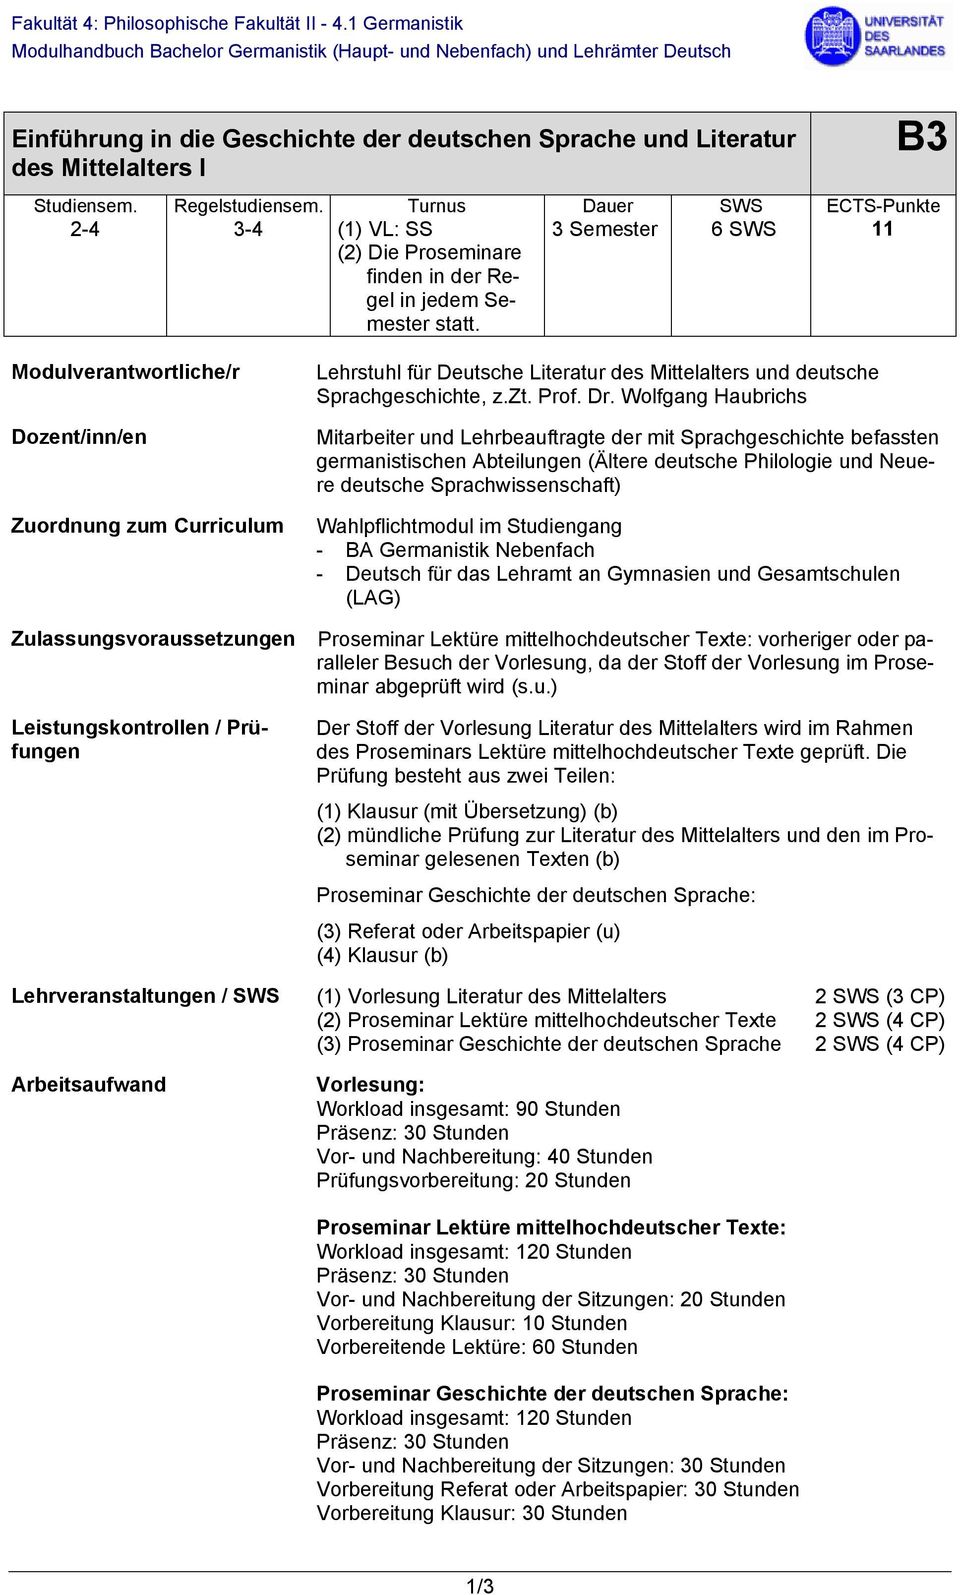 3 Semester 6 SWS 11 Modulverantwortliche/r Dozent/inn/en Zuordnung zum urriculum Lehrstuhl für Deutsche Literatur des Mittelalters und deutsche Sprachgeschichte, z.zt. Prof. Dr.